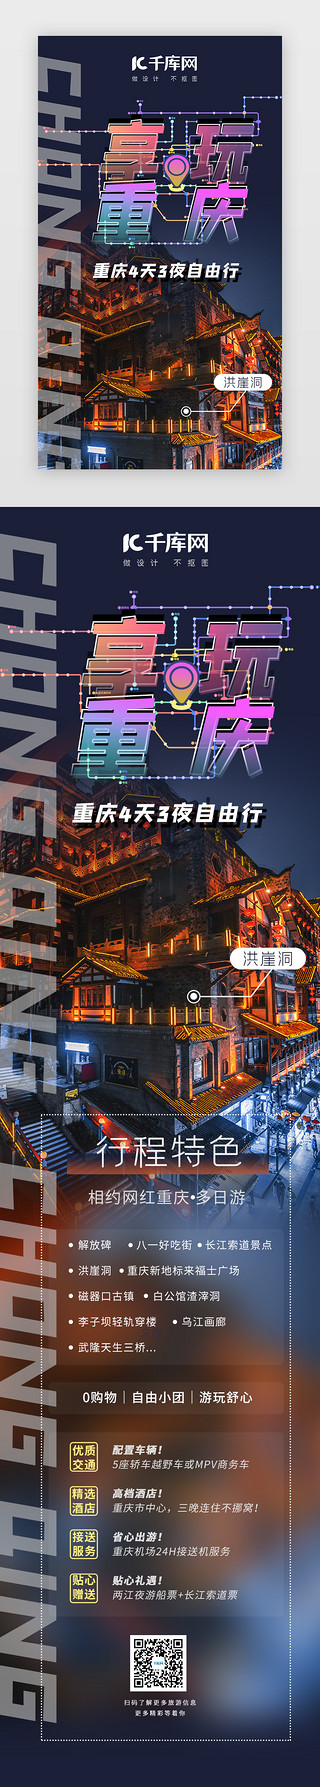 景点介绍UI设计素材_享玩重庆旅游